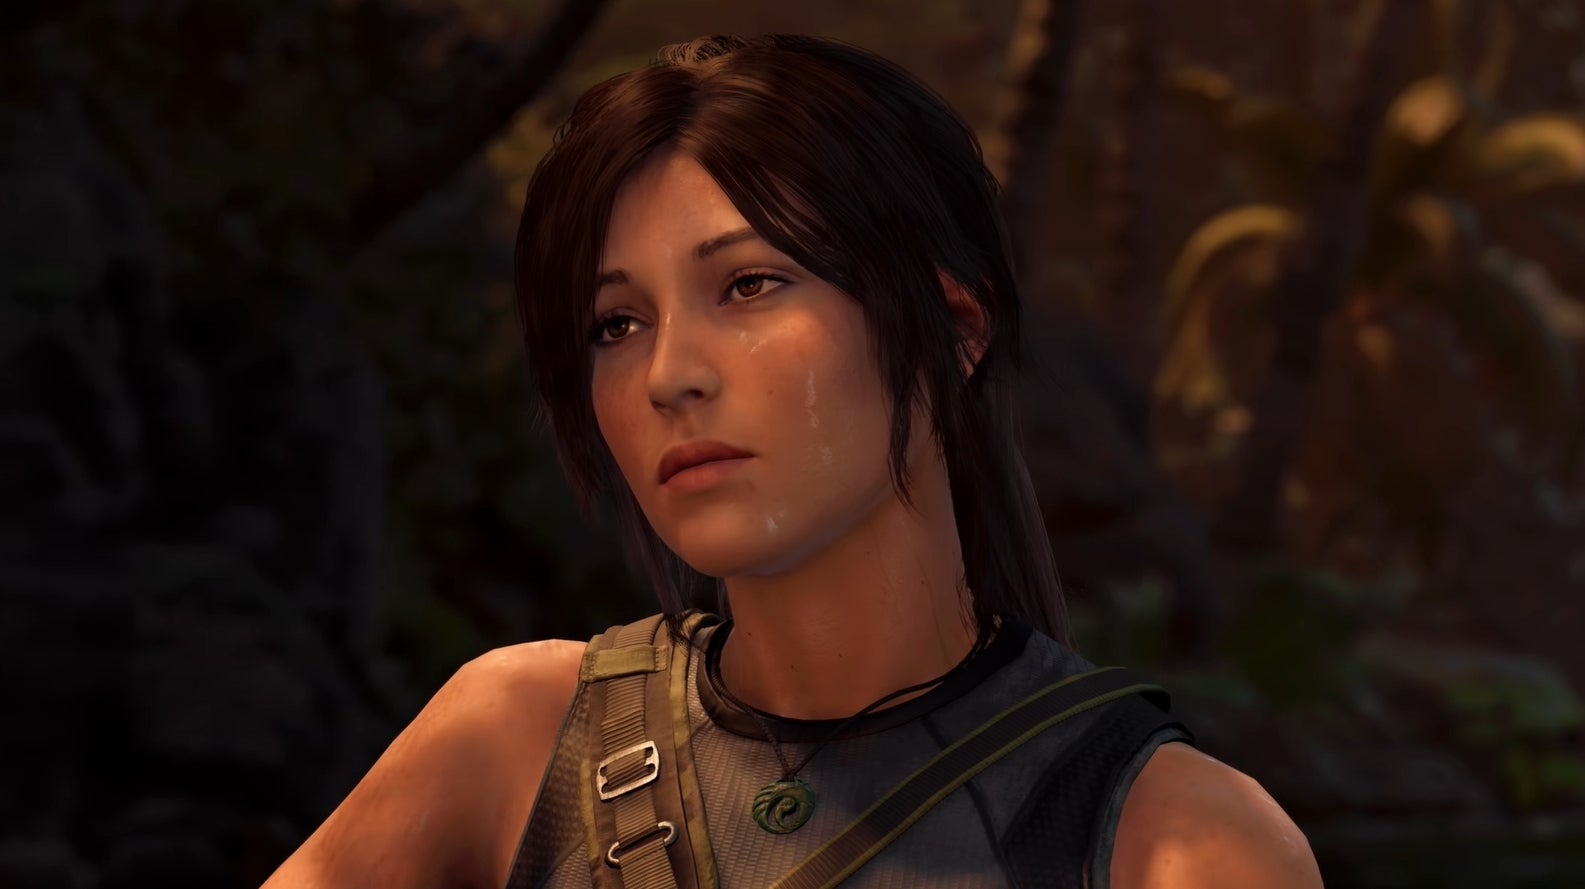 Bilder zu Shadow of the Tomb Raider läuft jetzt in 4K und 60fps auf der PS5 dank Update